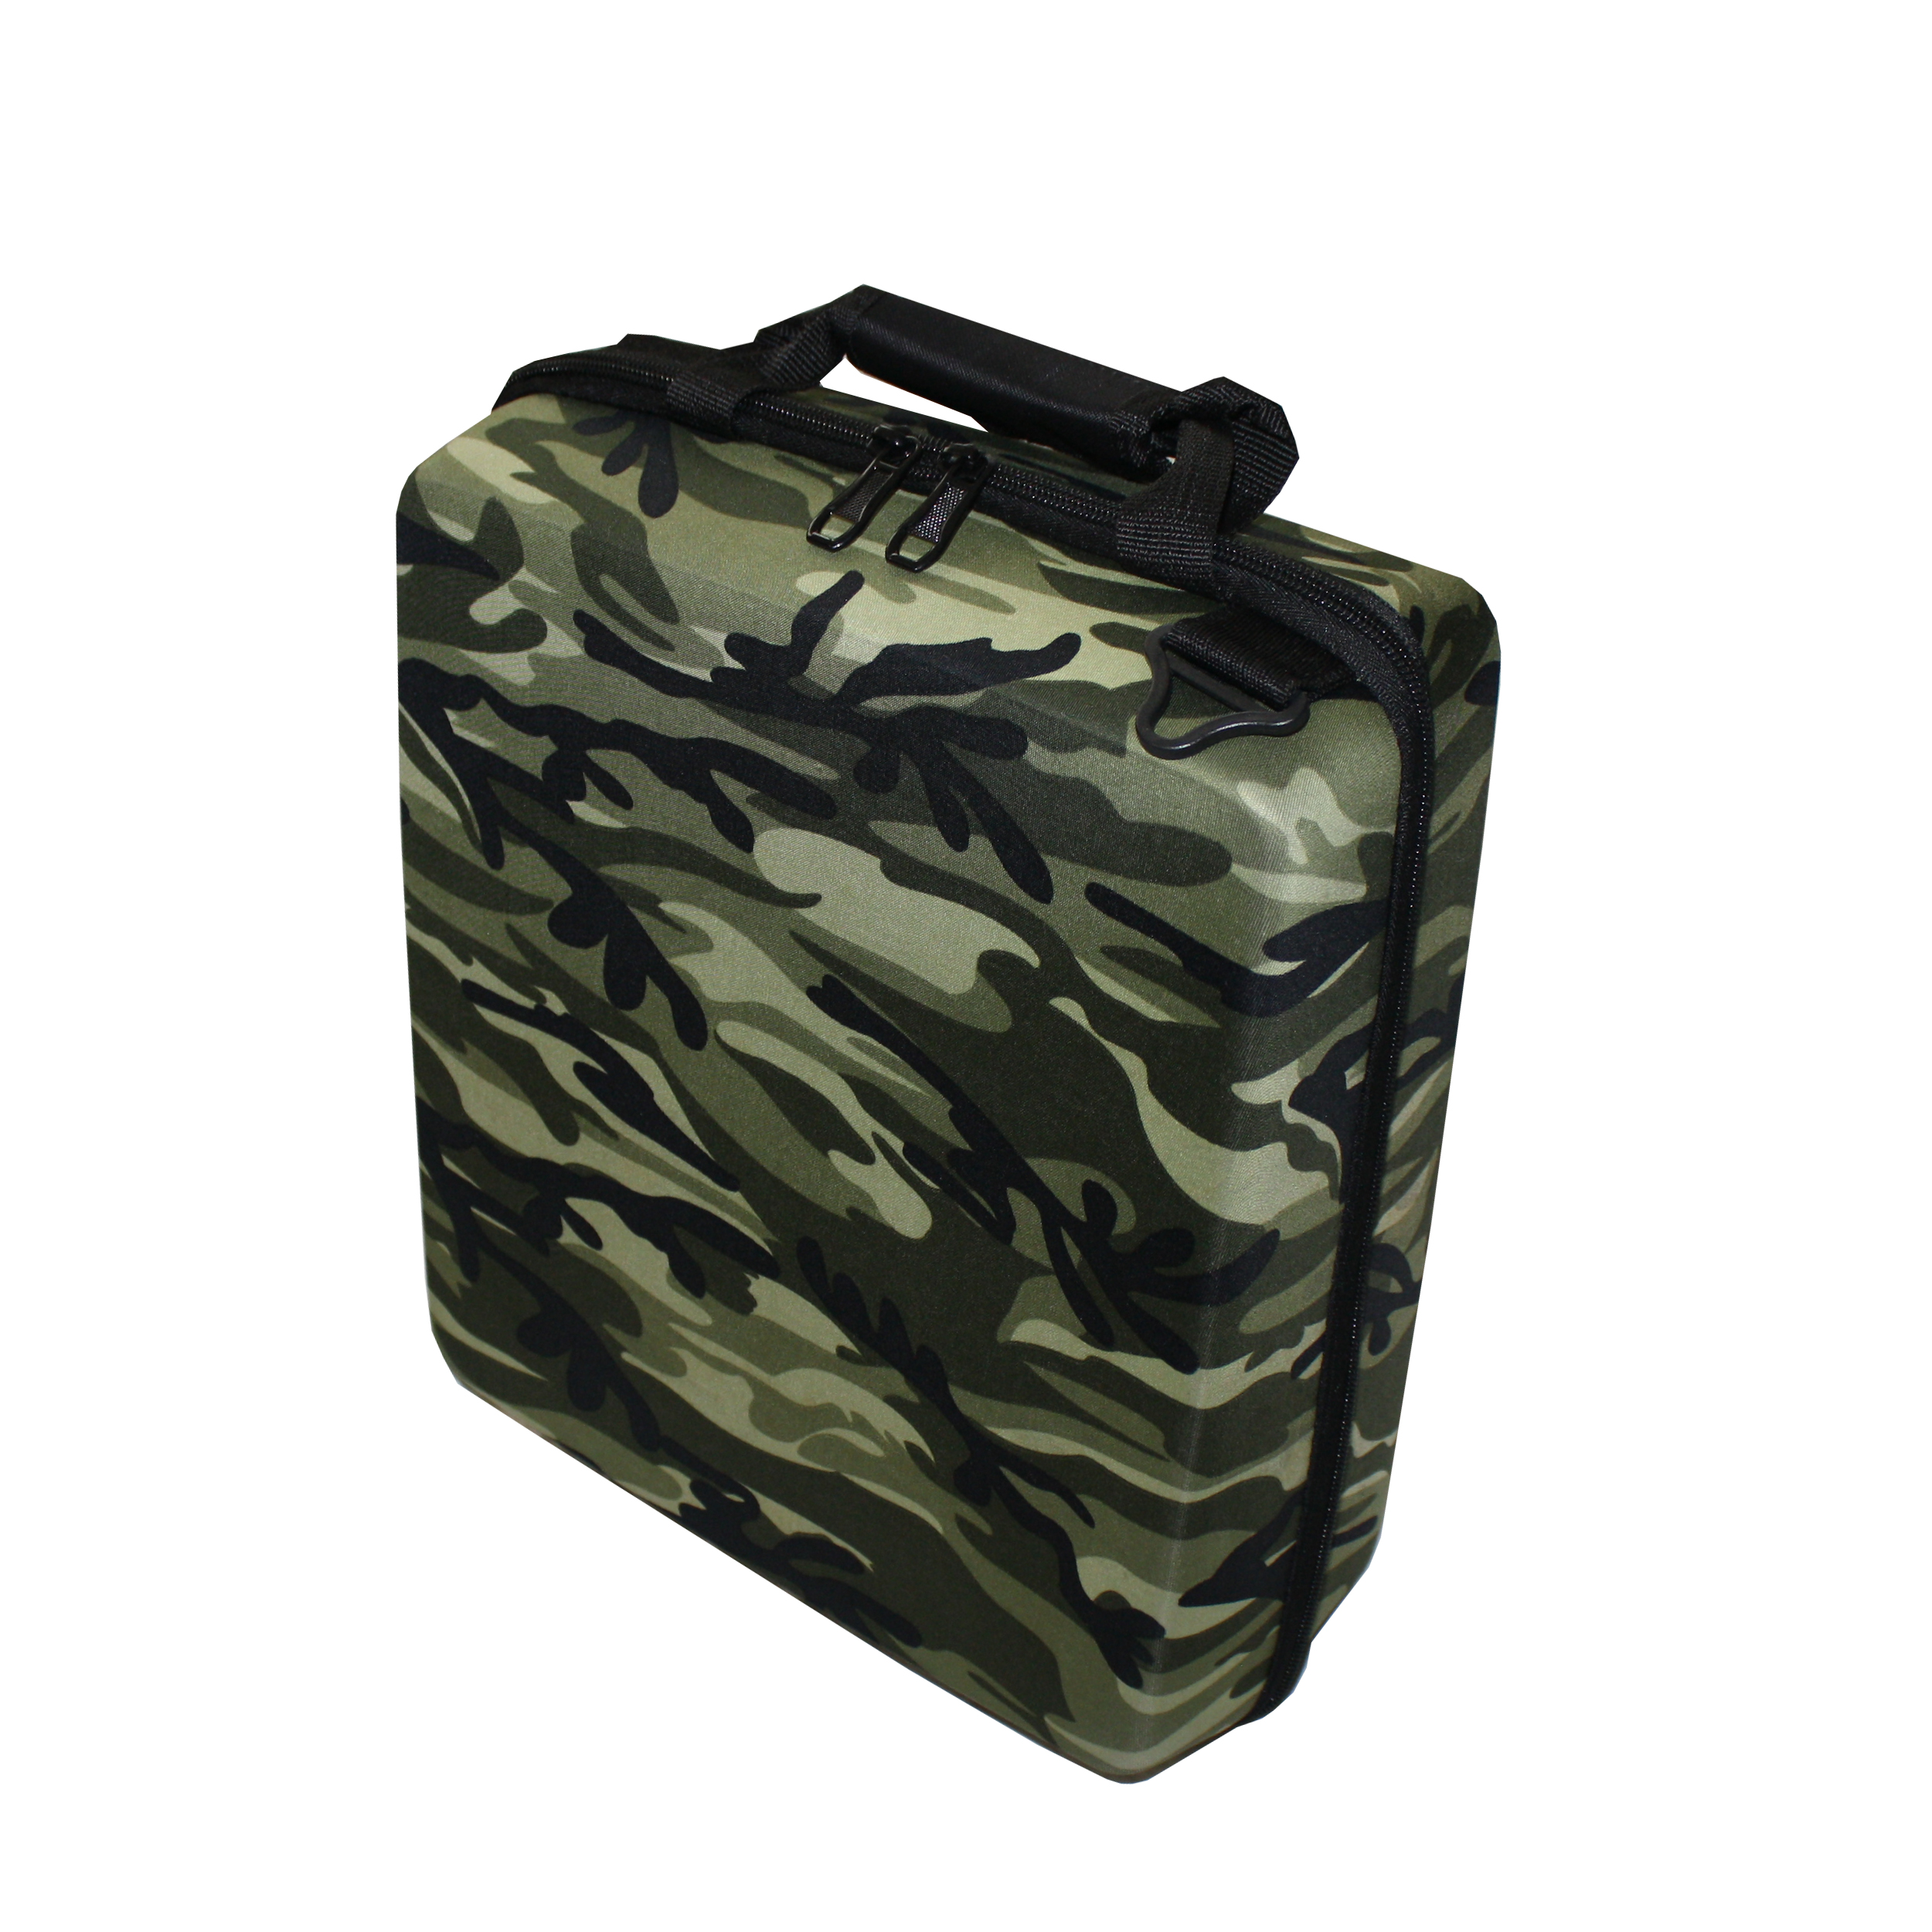 خرید                     کیف حمل پلی استیشن 4 مدل army 0010